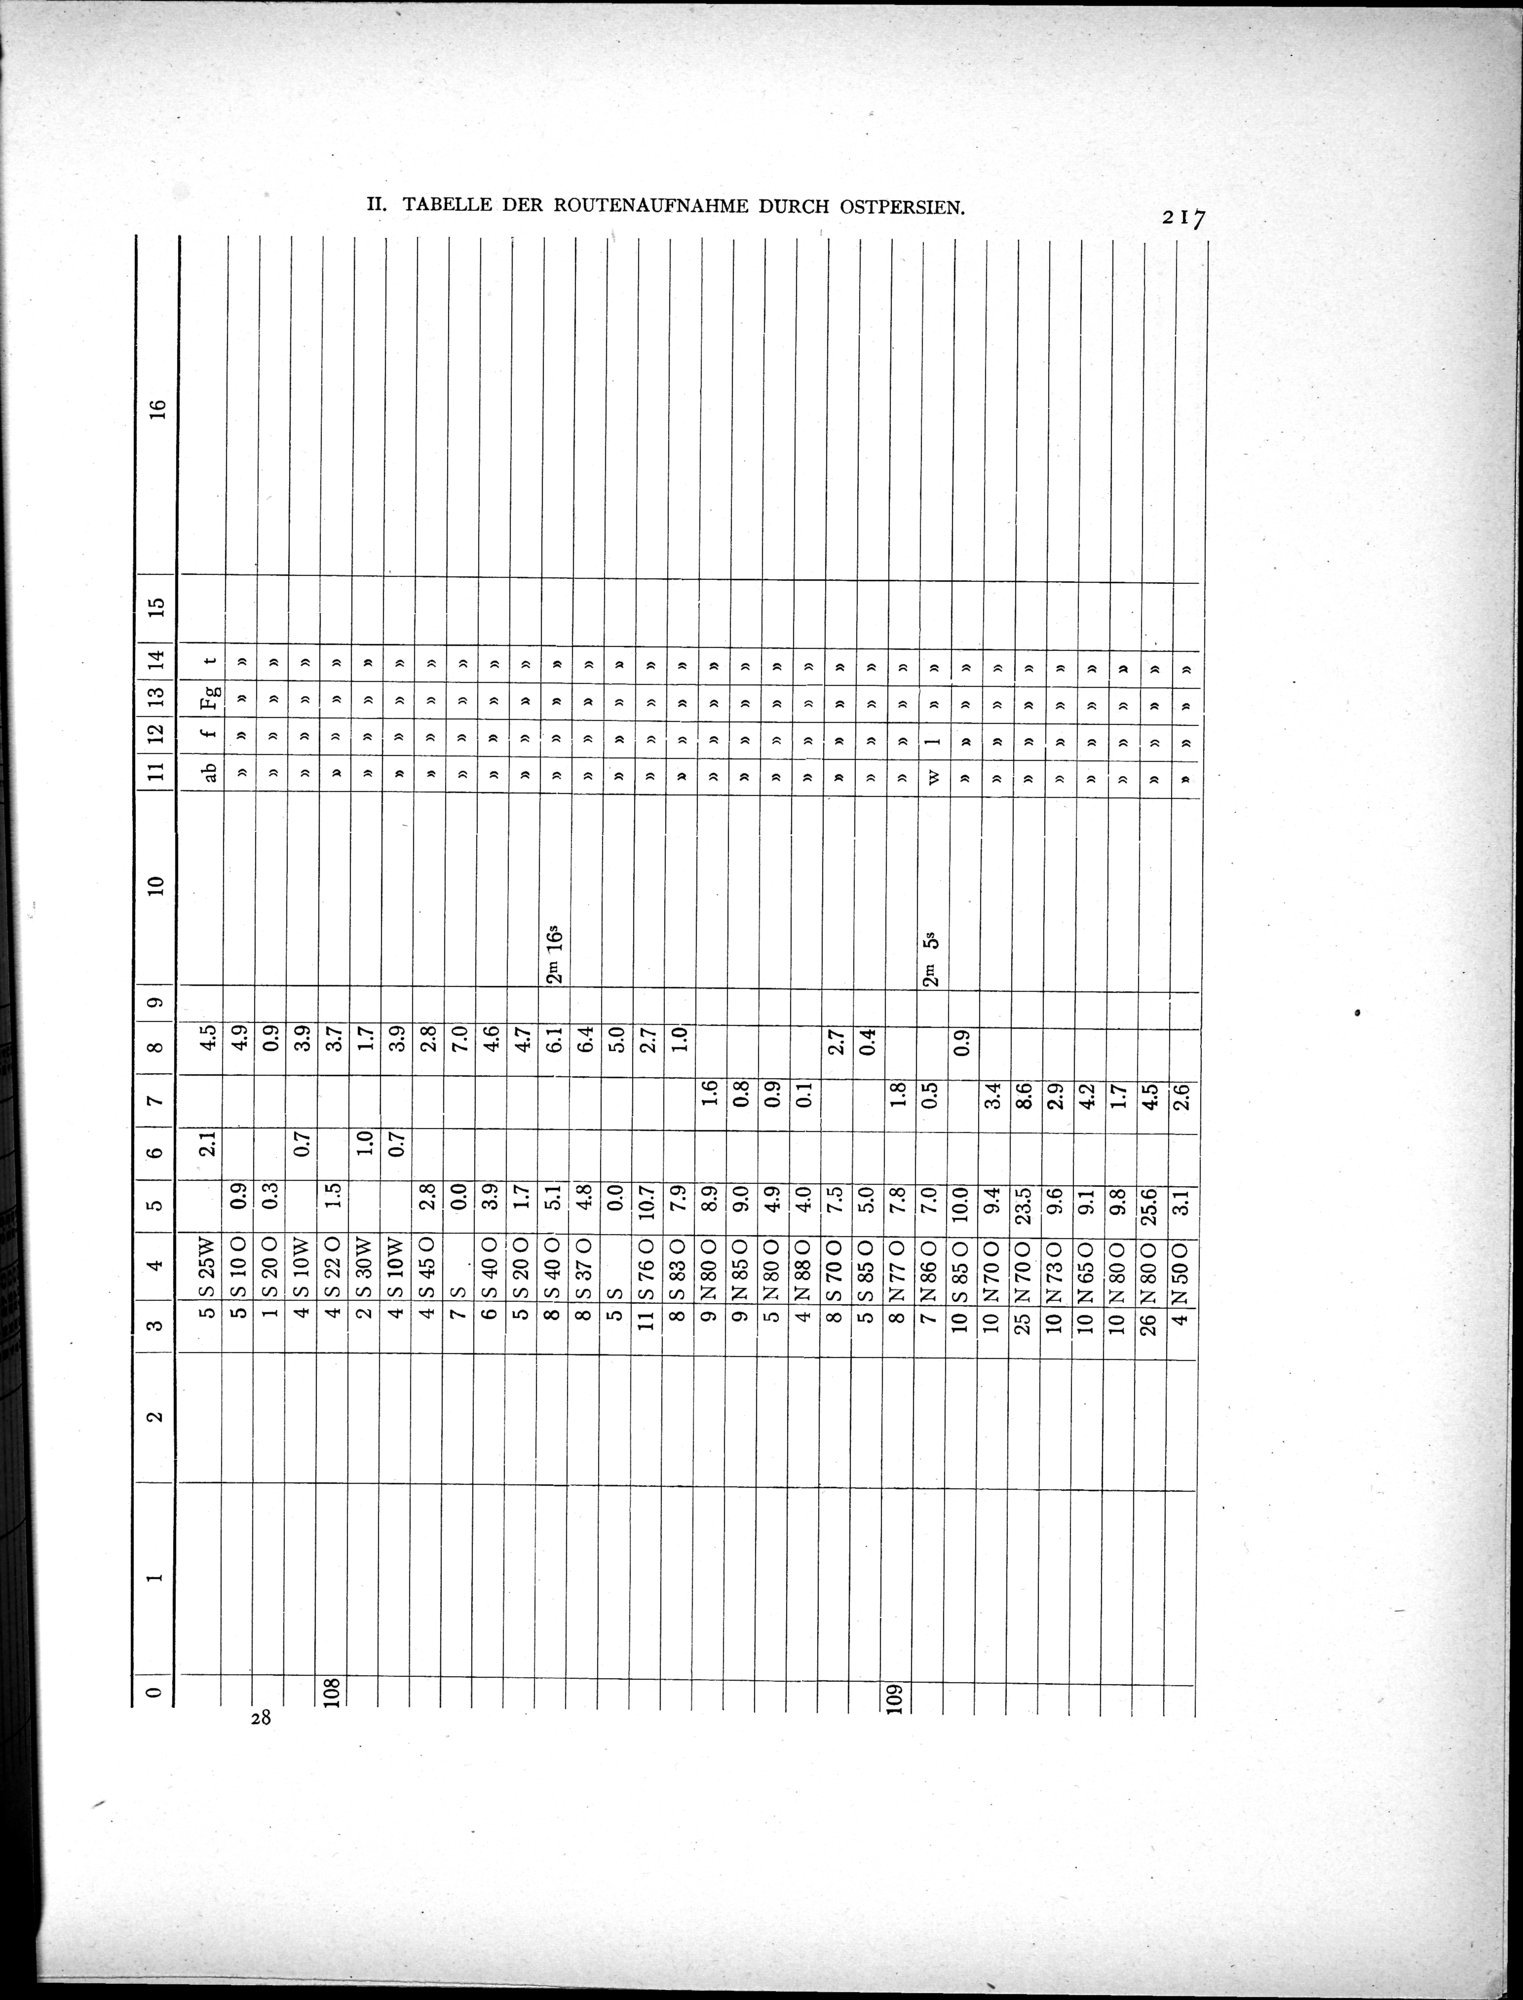 Eine Routenaufnahme durch Ostpersien : vol.2 / Page 287 (Grayscale High Resolution Image)